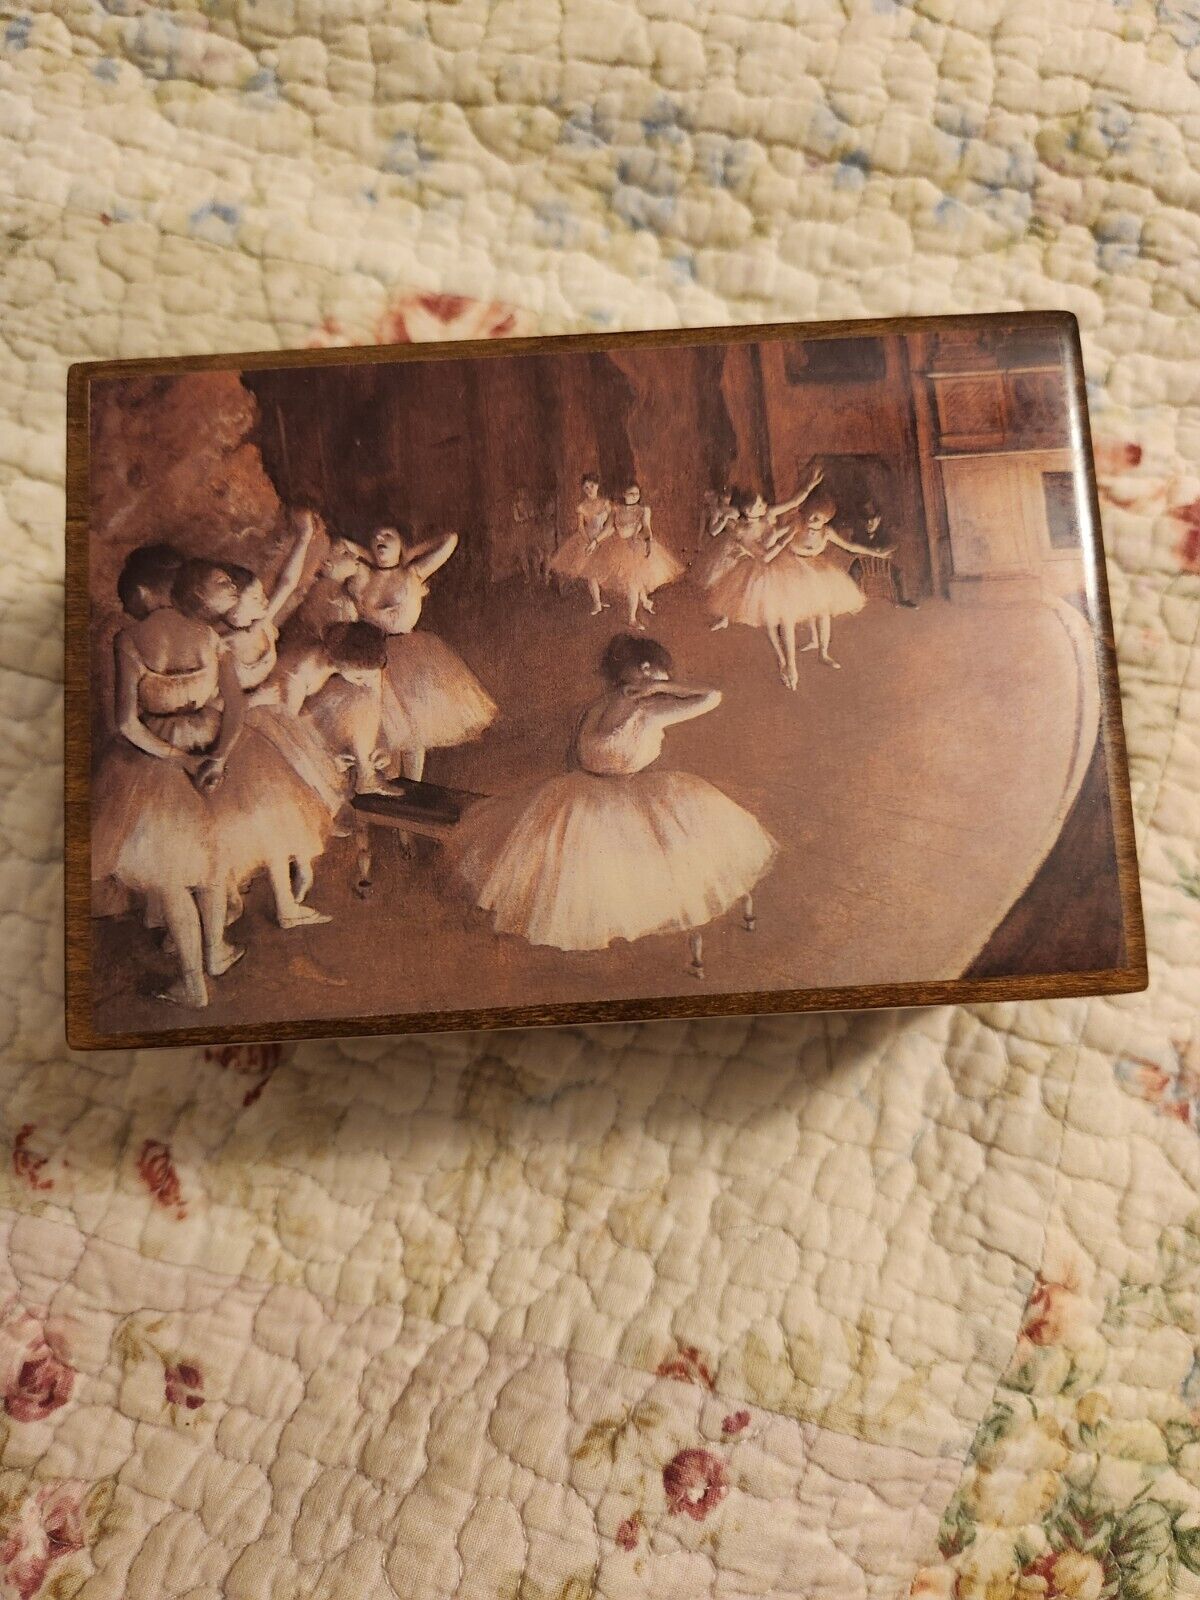 \'Musical Memories\' The American Music Box Co. Sm music box-cover art:Edgar Degas